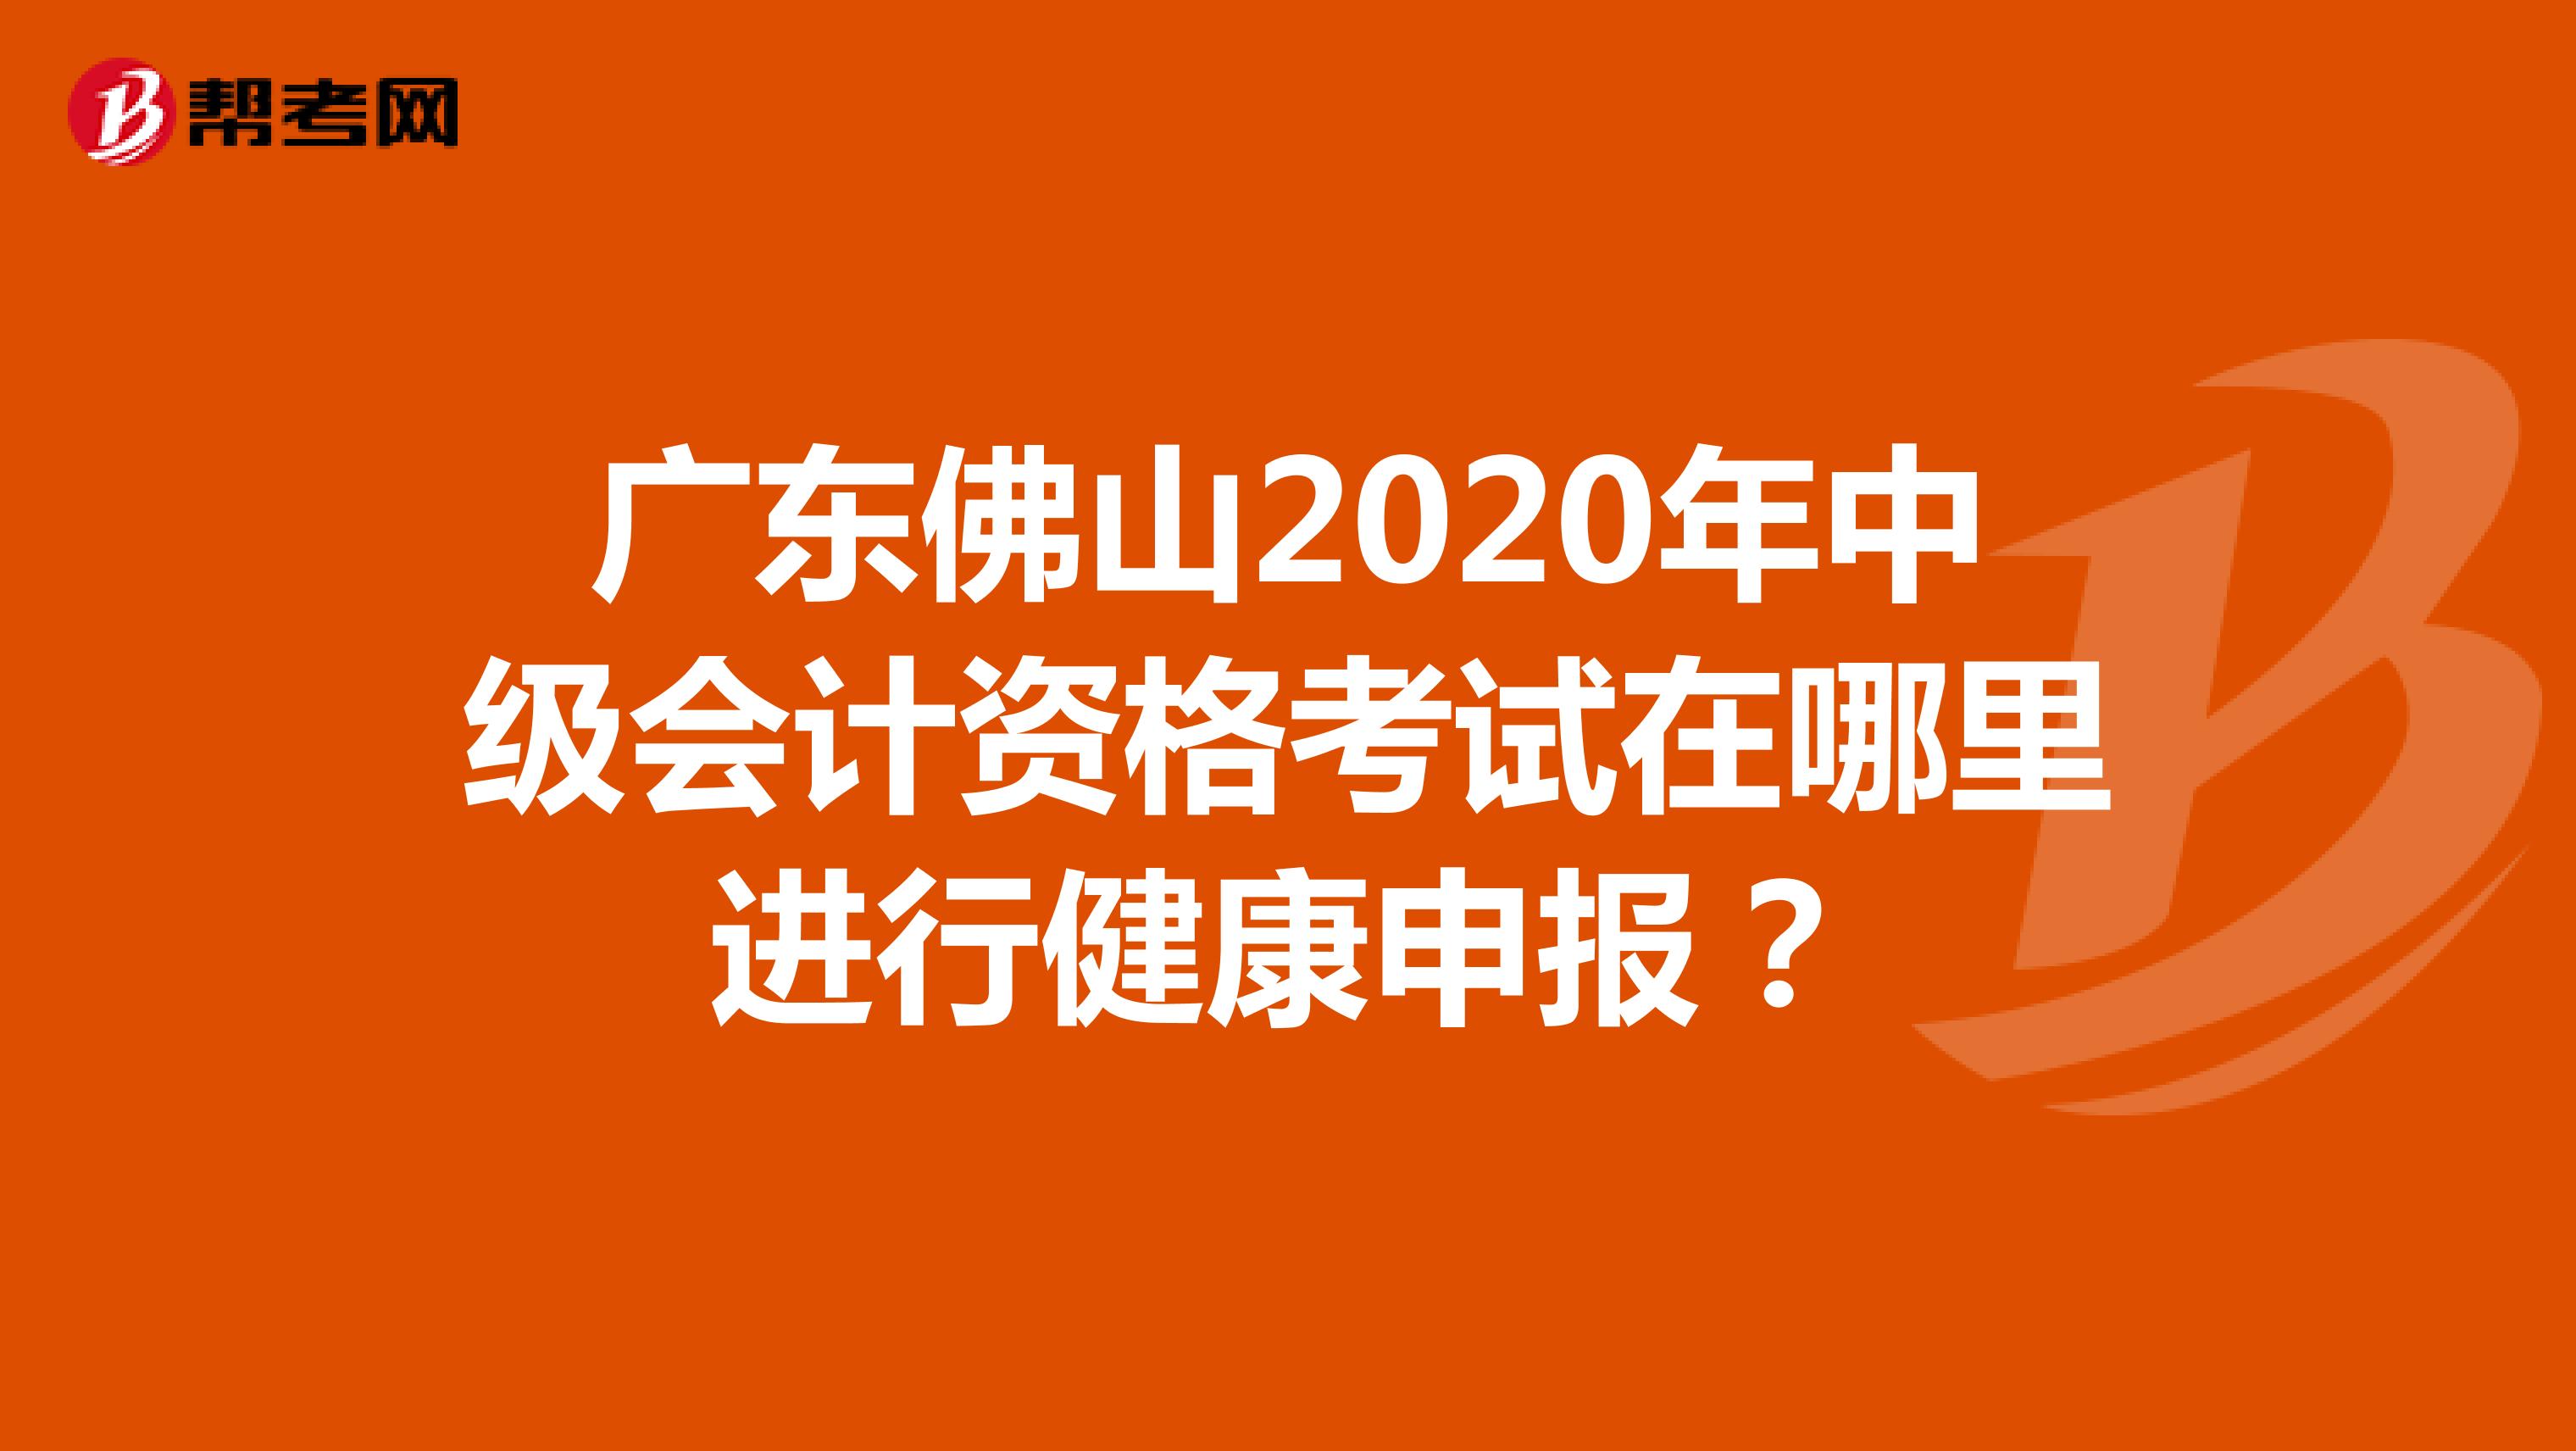 广东佛山2020年中级会计资格考试在哪里进行健康申报？